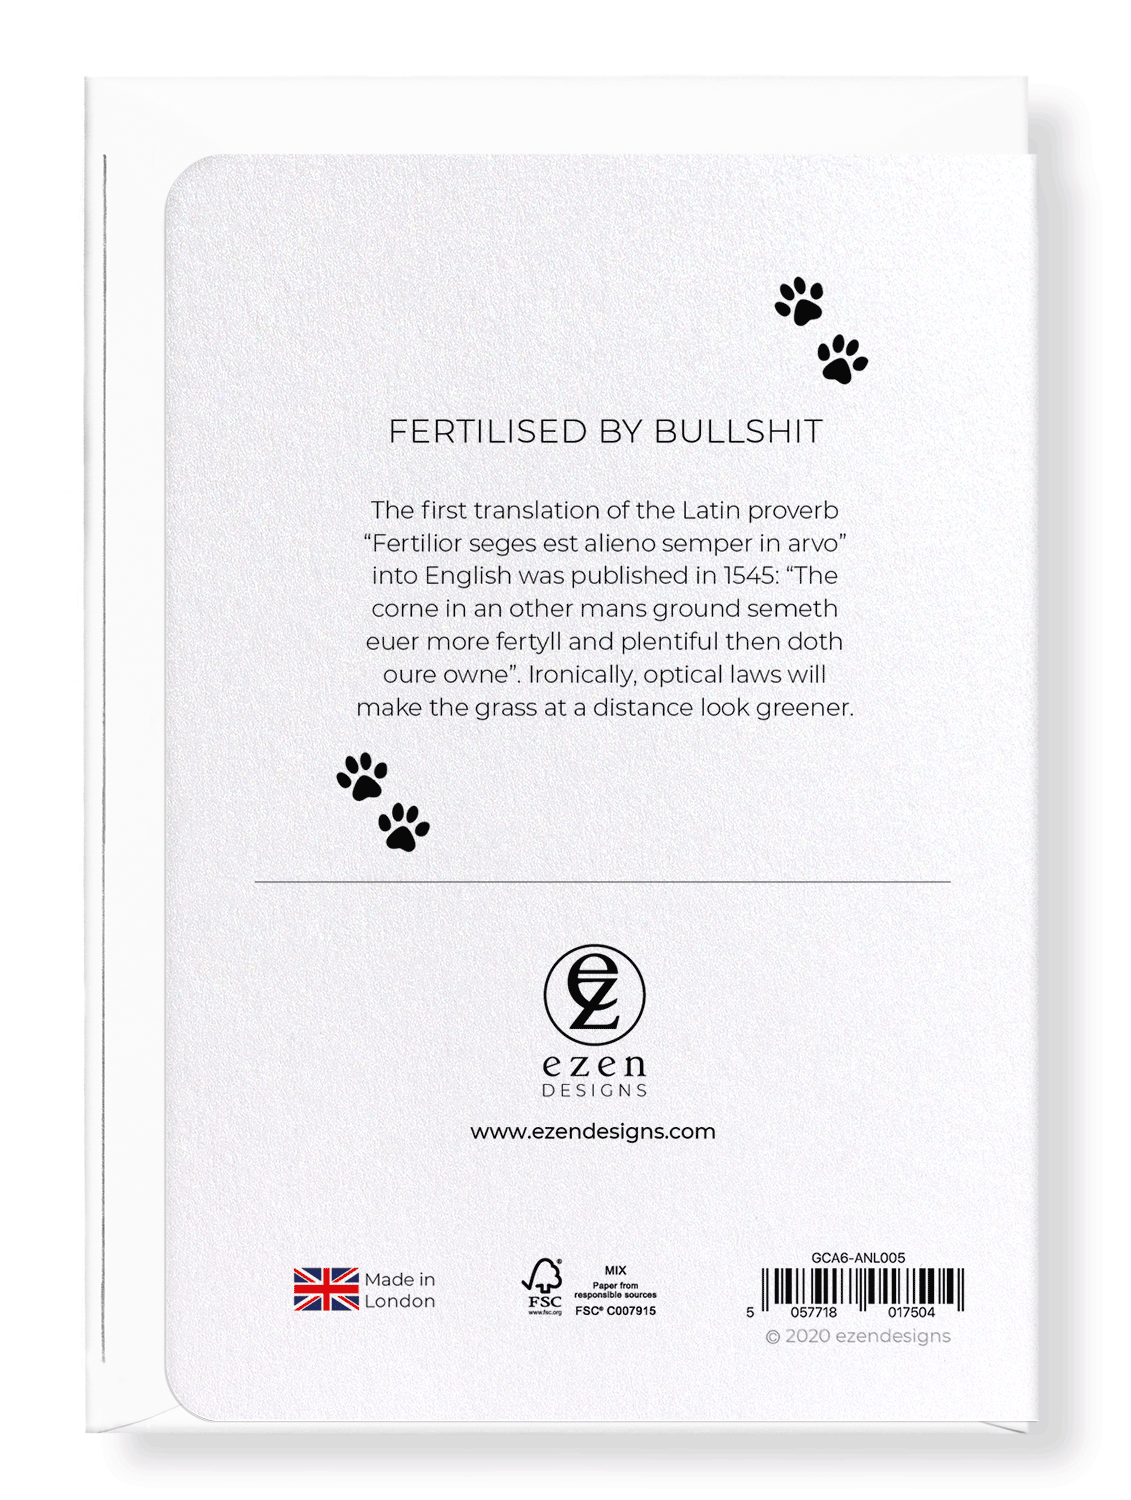 Ezen Designs - Fertilised by bullshit - Greeting Card - Back